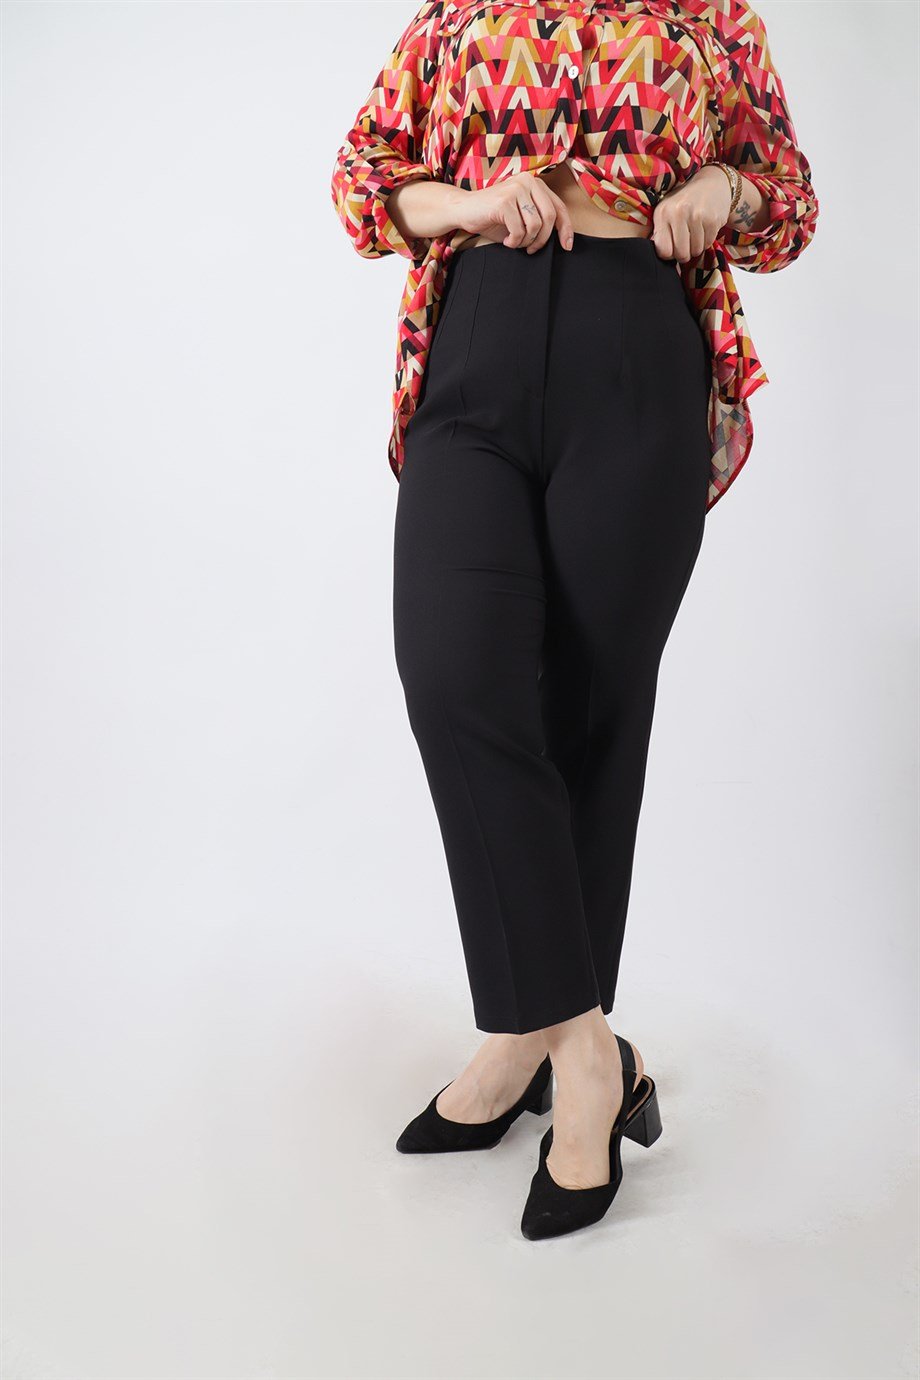 Büyük Beden Deniz Pantolon Siyah | büyük beden bayan pantolon modelleri ve  fiyatları | Bedrinxxl